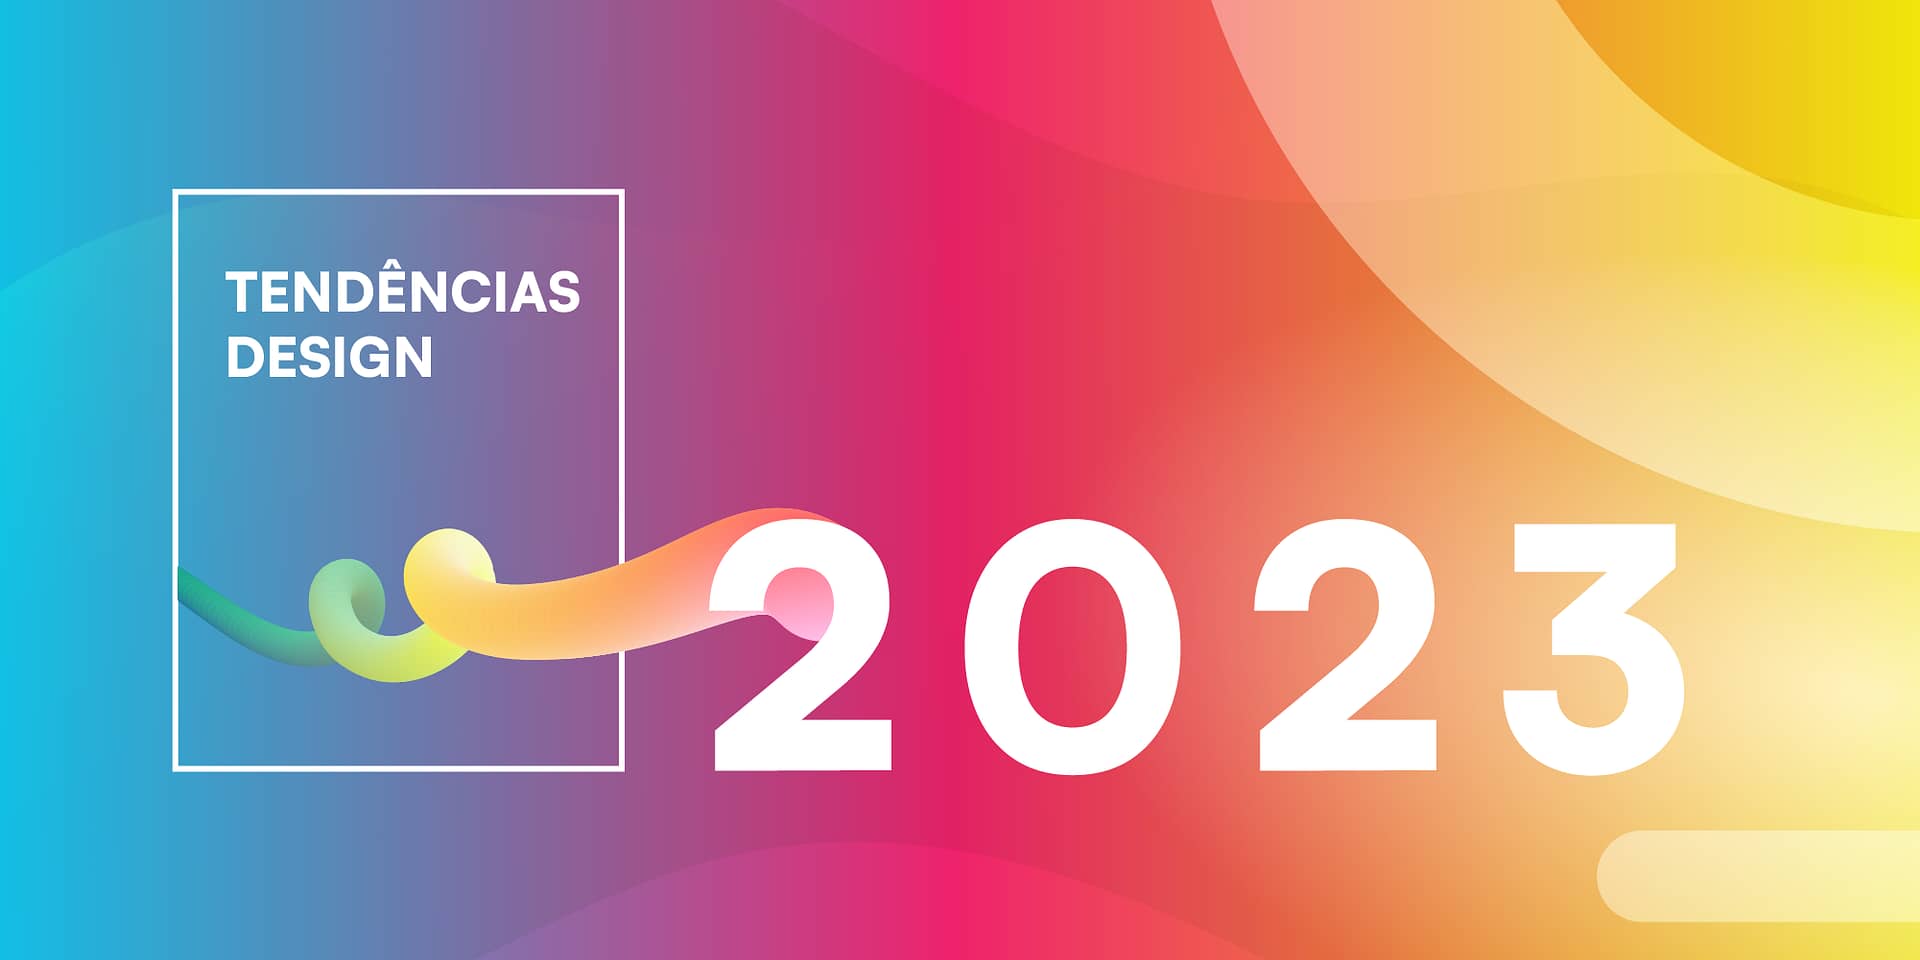 8 tendências de design gráfico que irão definir 2022